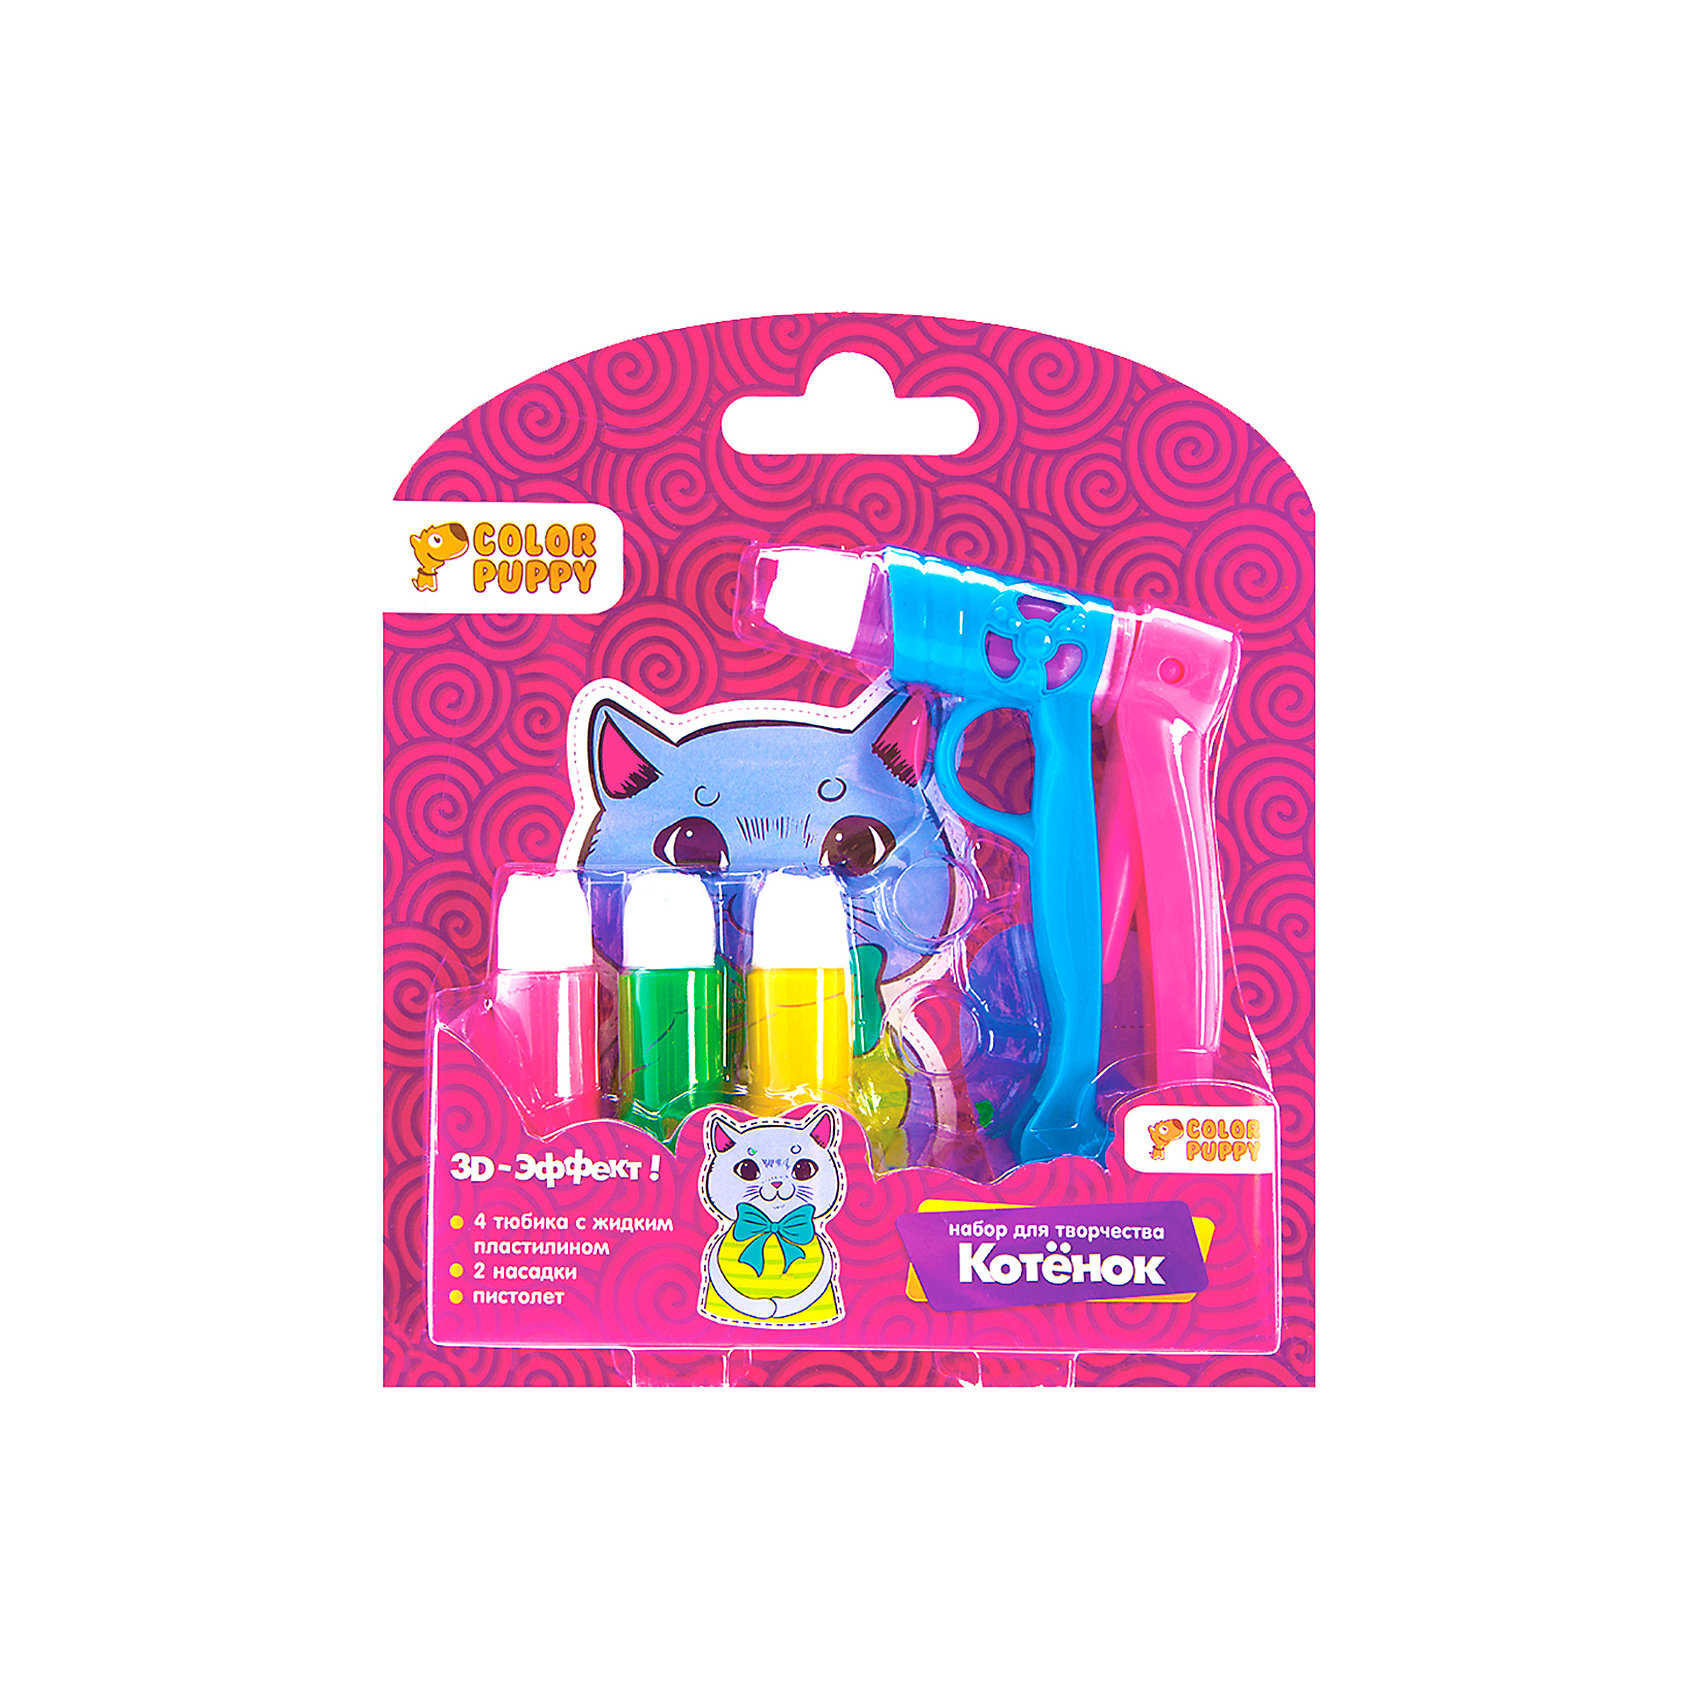 Жидкий пластилин. Color Puppy набор для творчества. Пластилин Color Puppy 2 цвета с пистолетом. Лента набор с жидким пластилином.